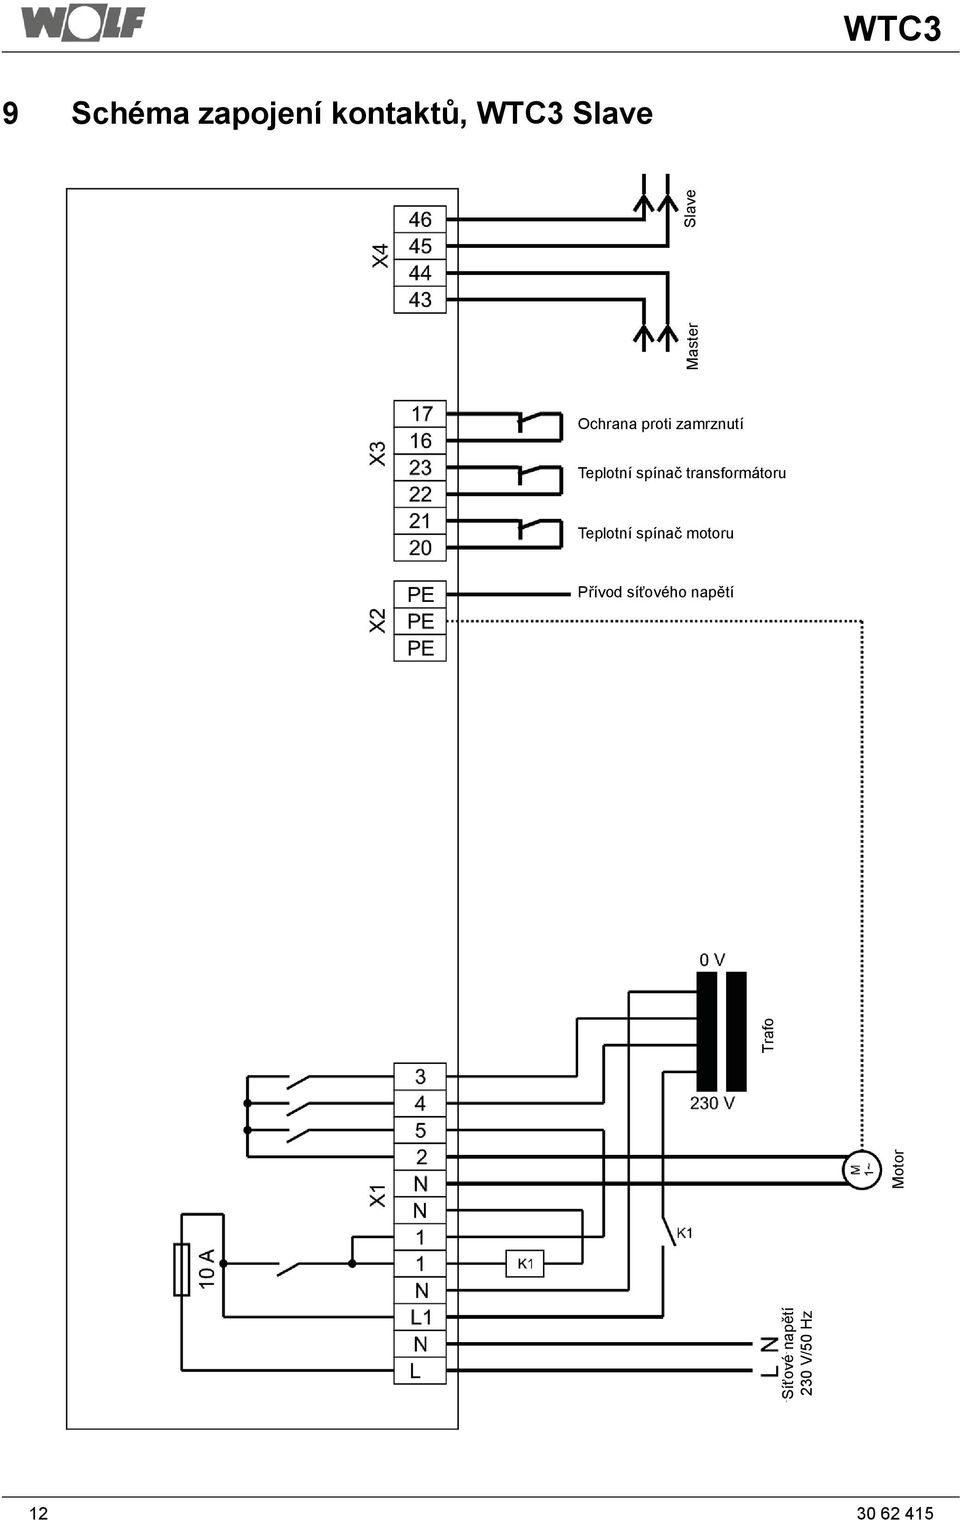 transformátoru Teplotní spínač motoru Přívod